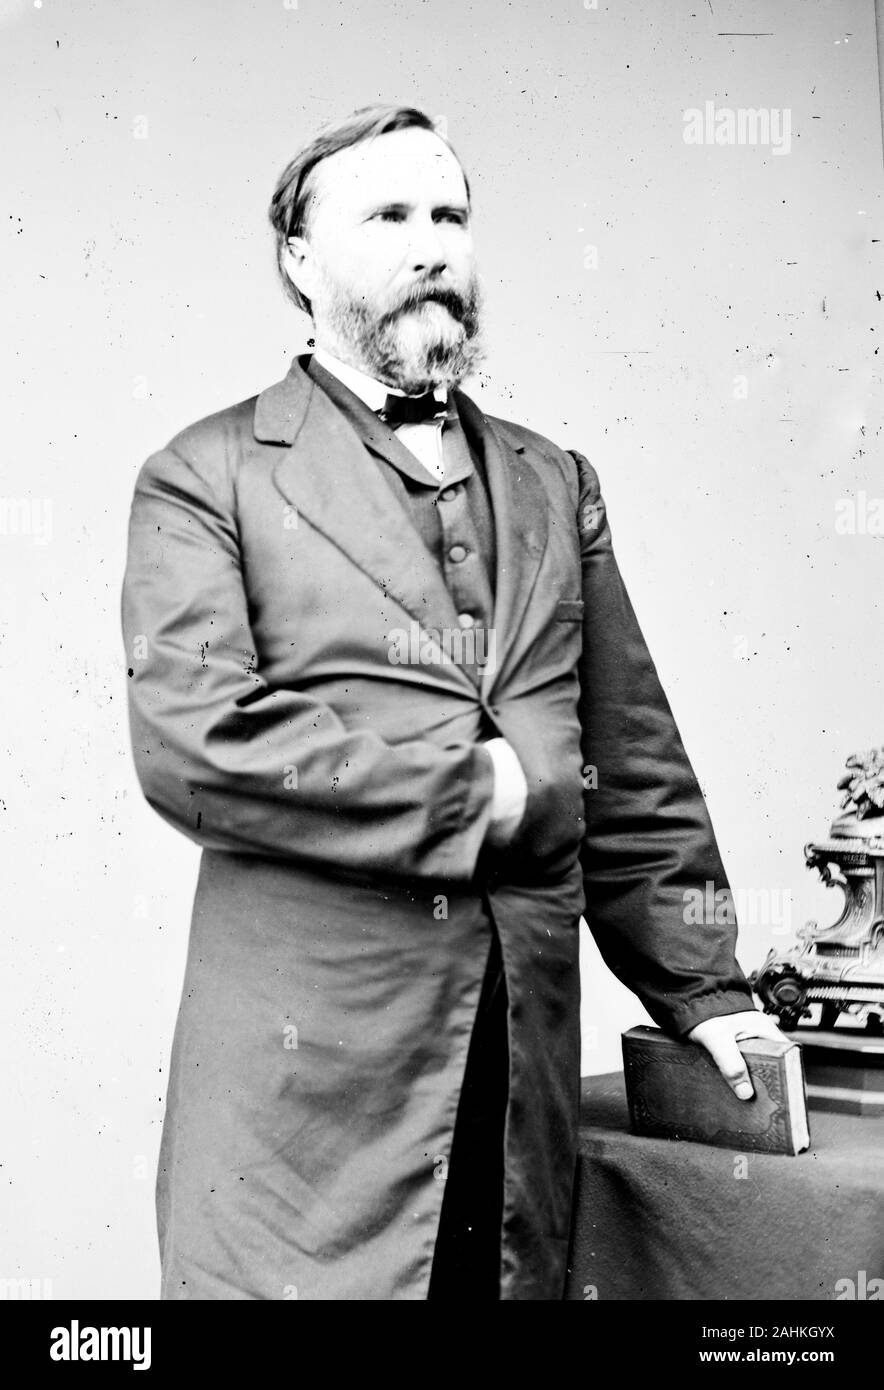 James Longstreet (1821 - 1904) generale confederato della Guerra Civile americana e le principali subordinate al generale Robert E. Lee, che lo ha chiamato il suo 'Old War Horse" Foto Stock